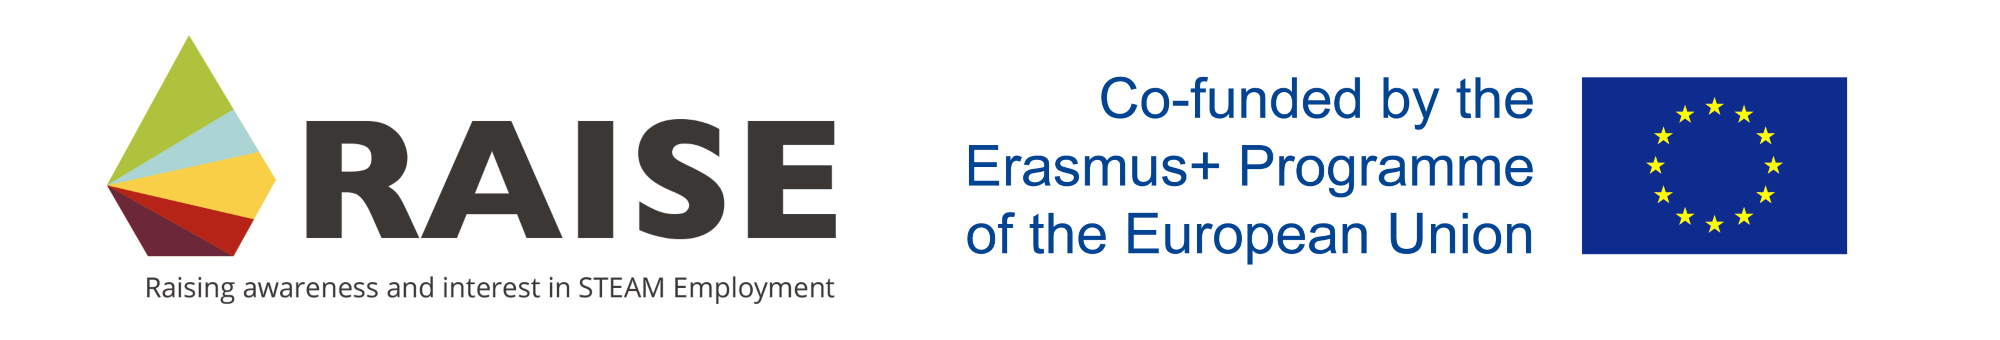 Erasmus Plus Logos